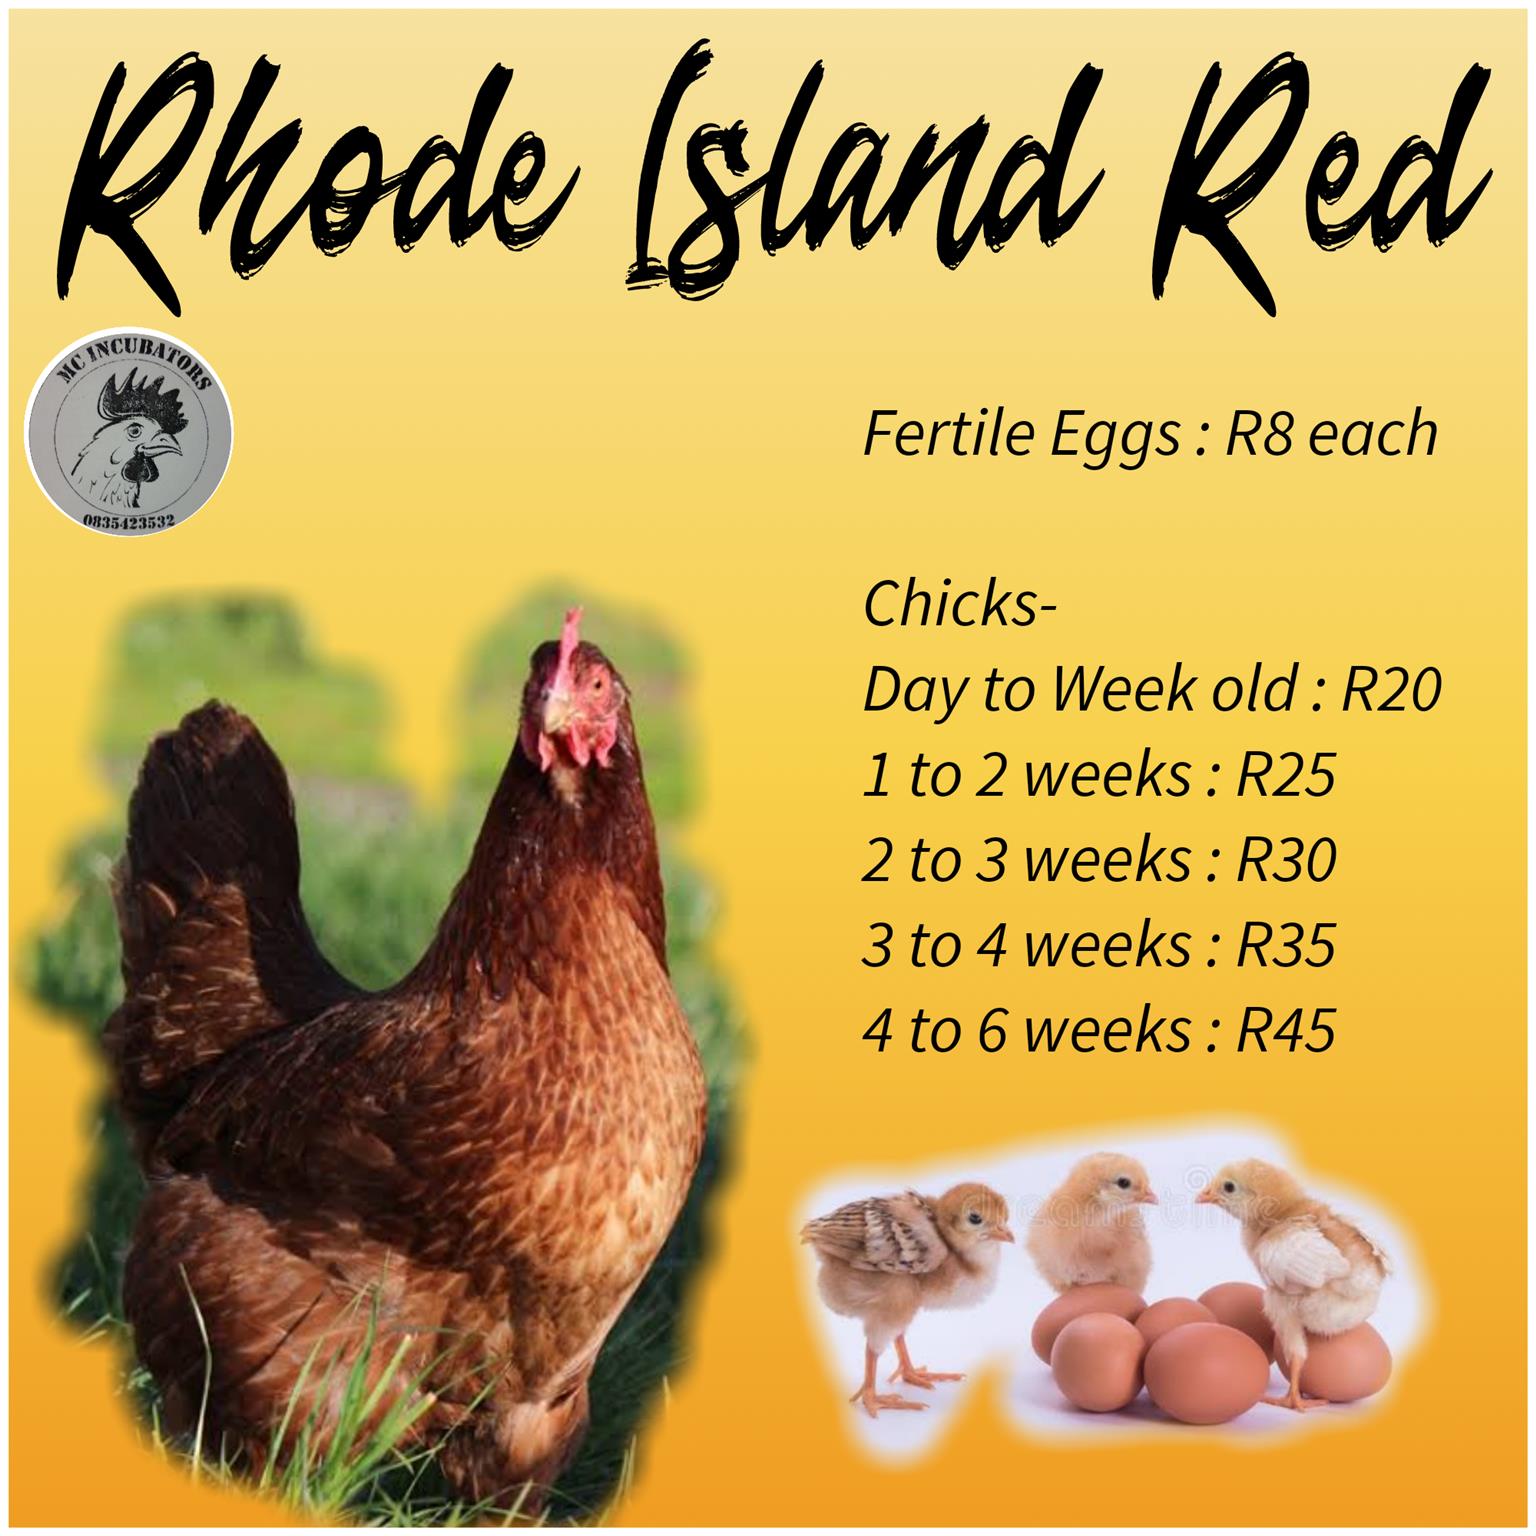 Rhode island red 